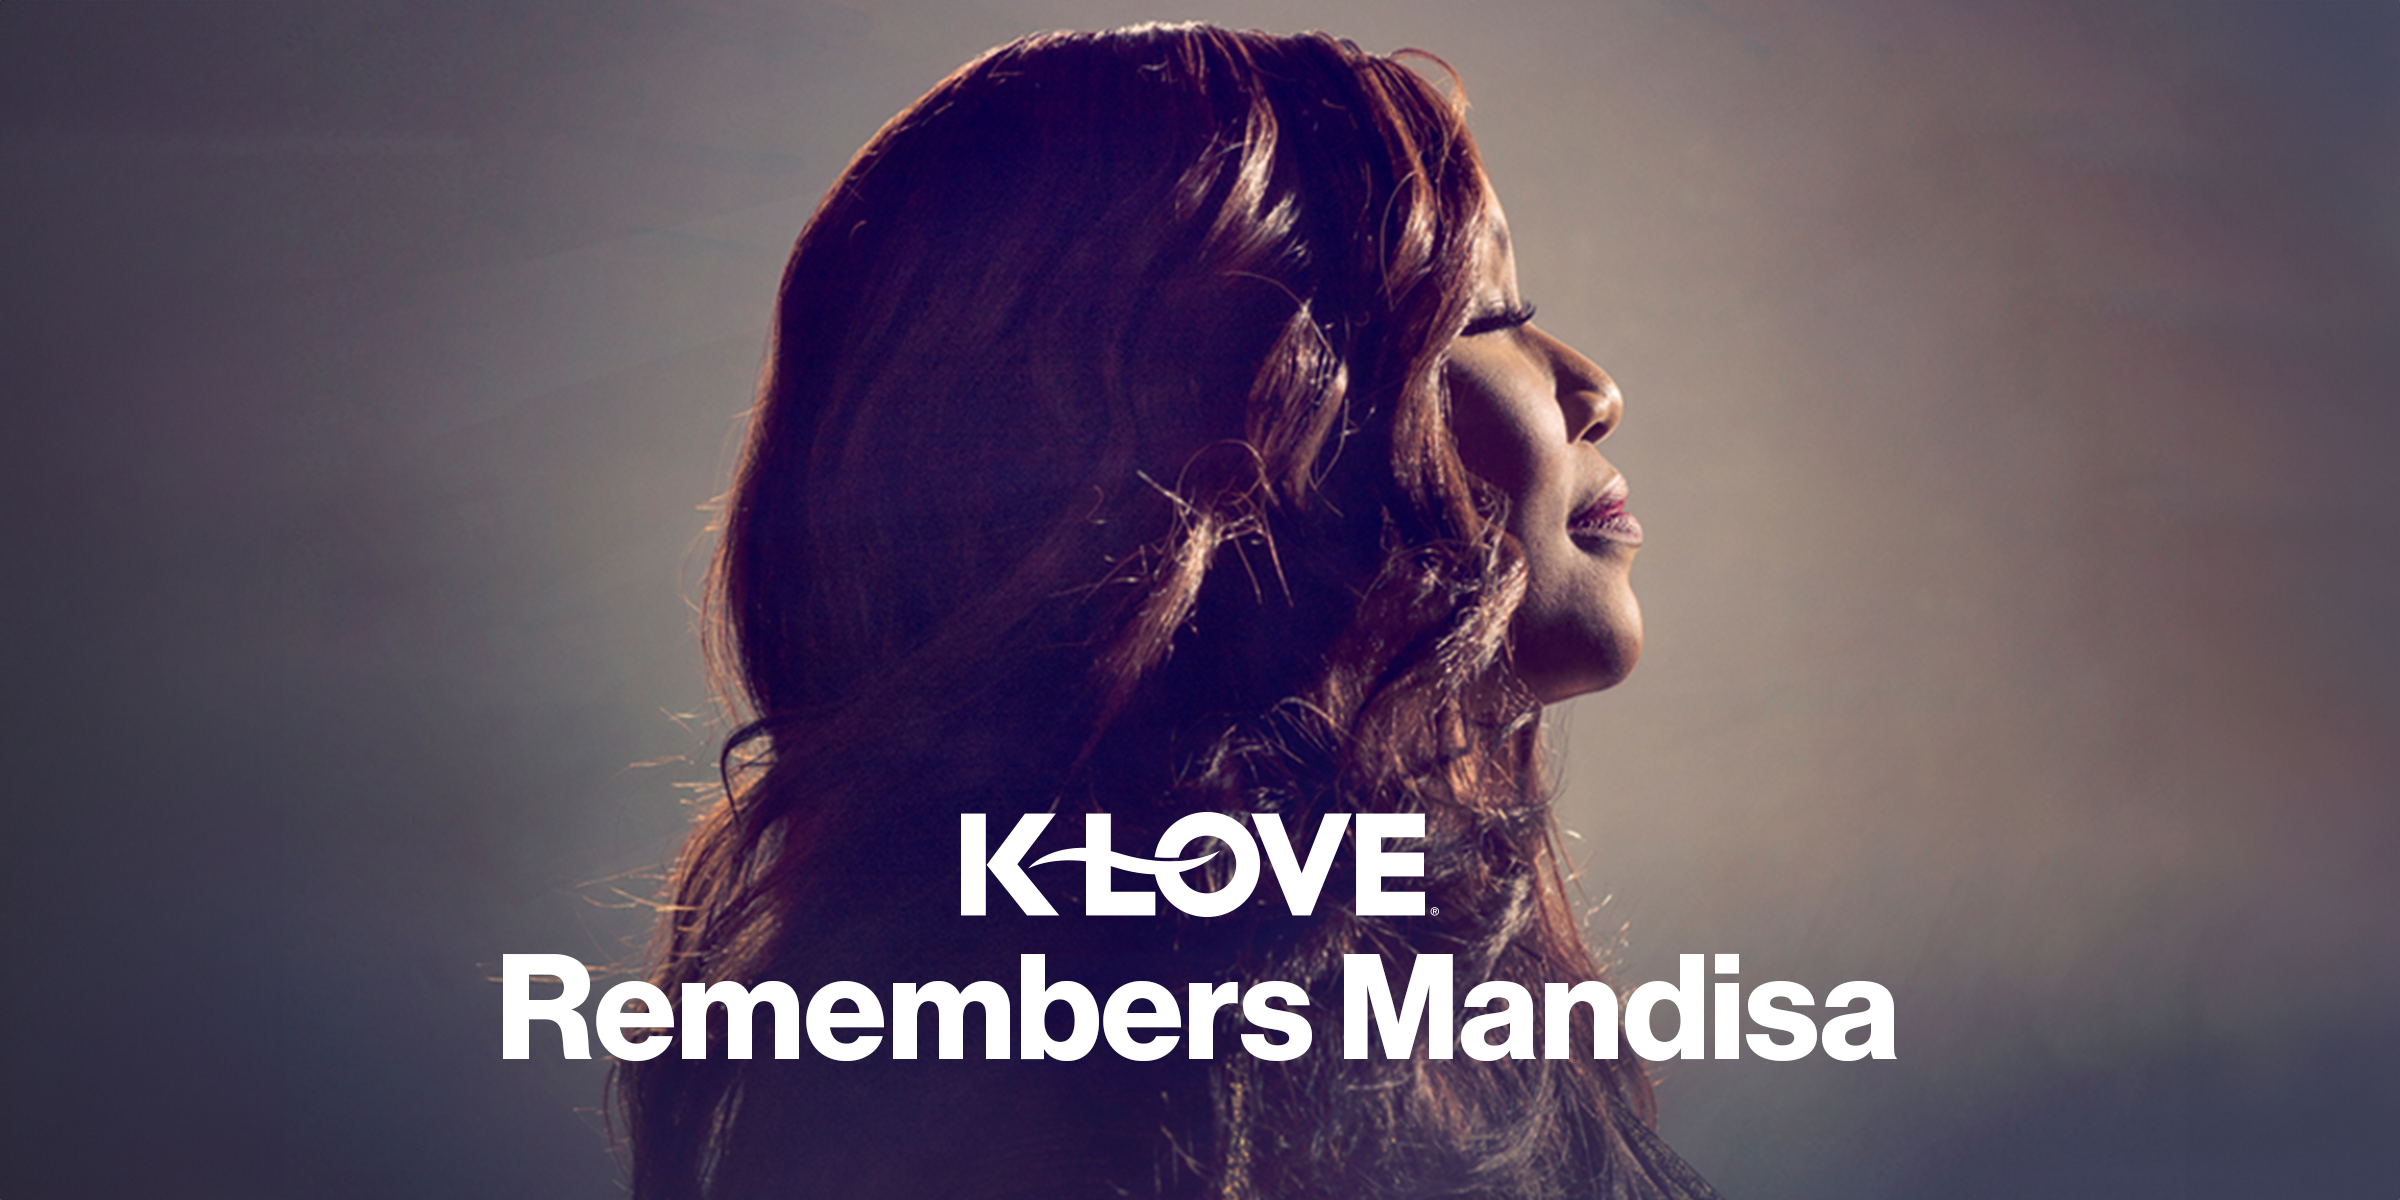 K-LOVE Remembers Mandisa